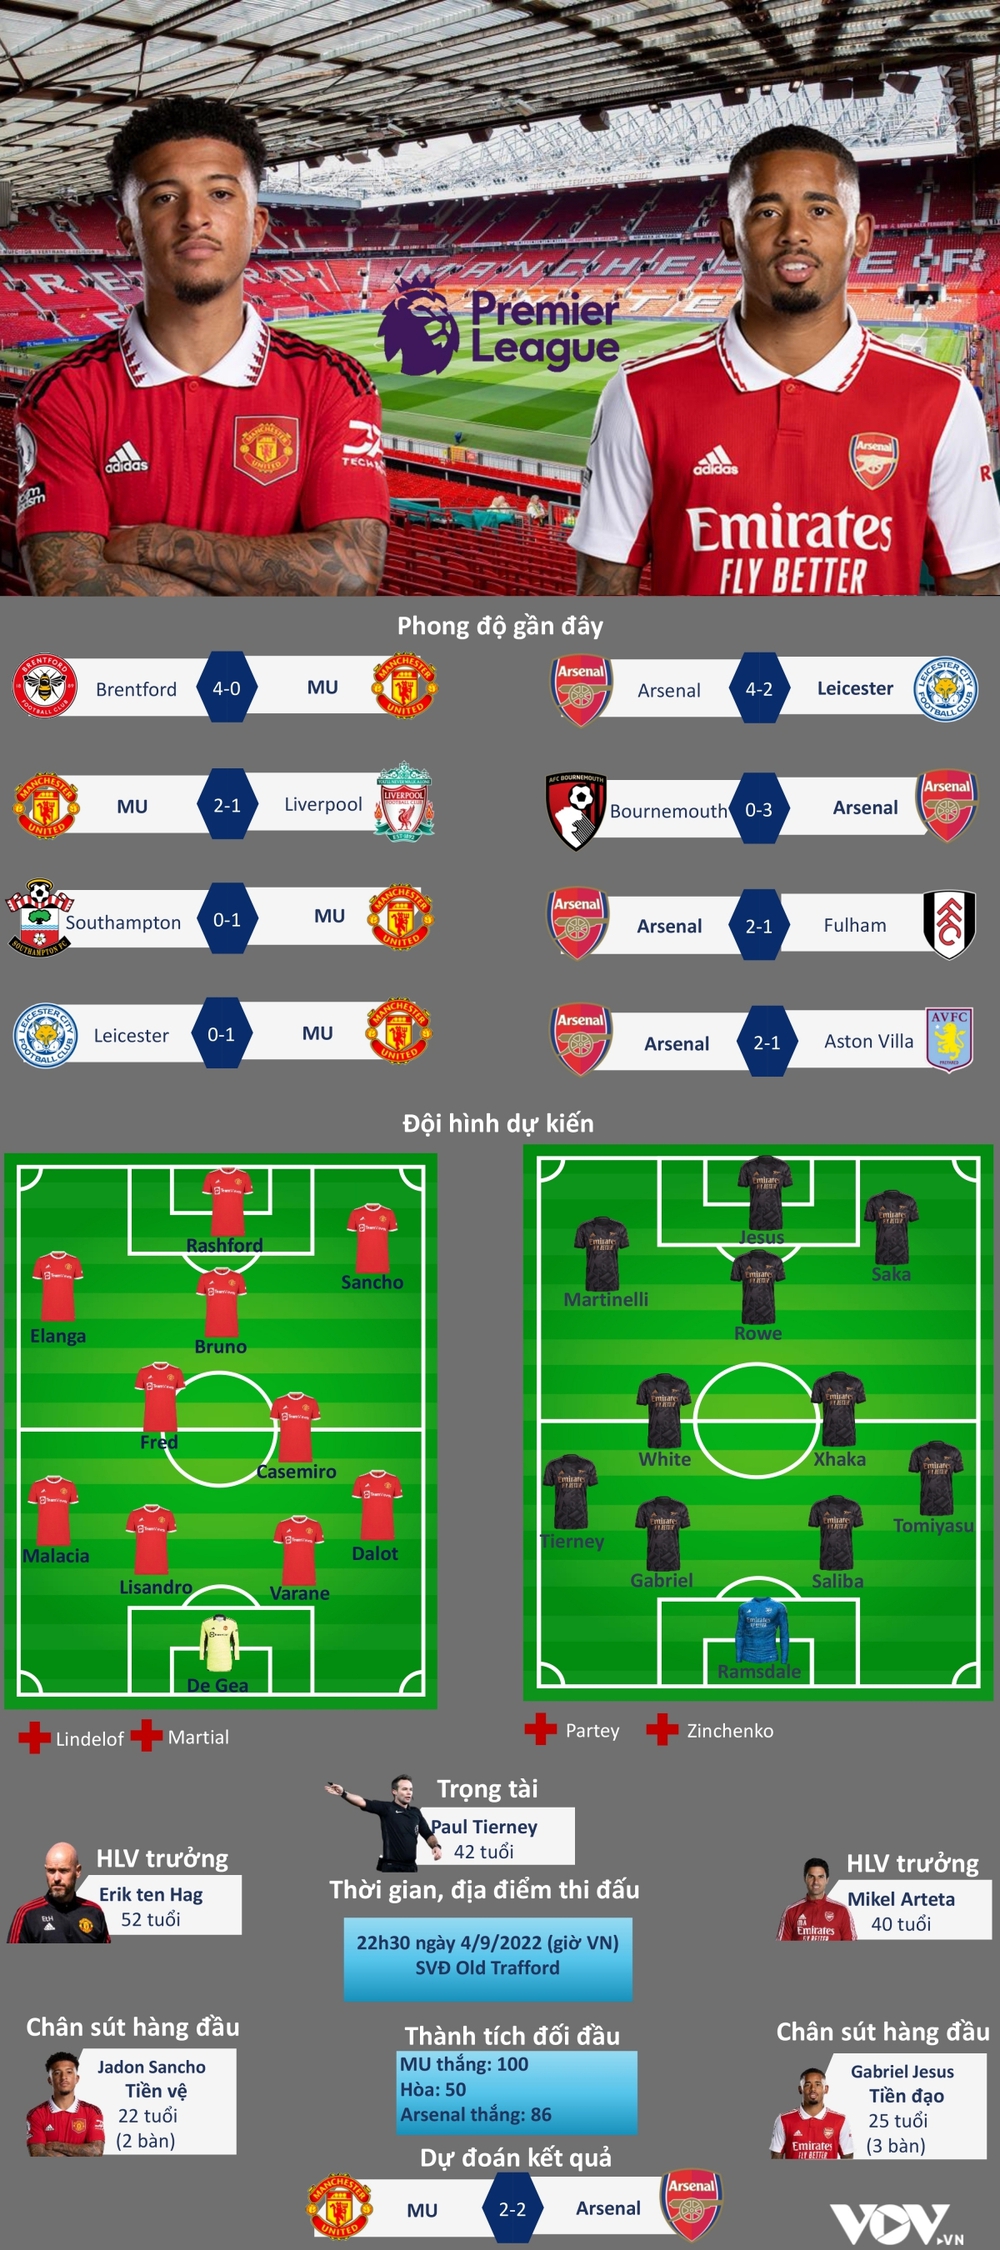 TRỰC TIẾP MU vs Arsenal: Quỷ đỏ mơ top 4, Pháo thủ quyết xây chắc ngôi đầu - Ảnh 1.